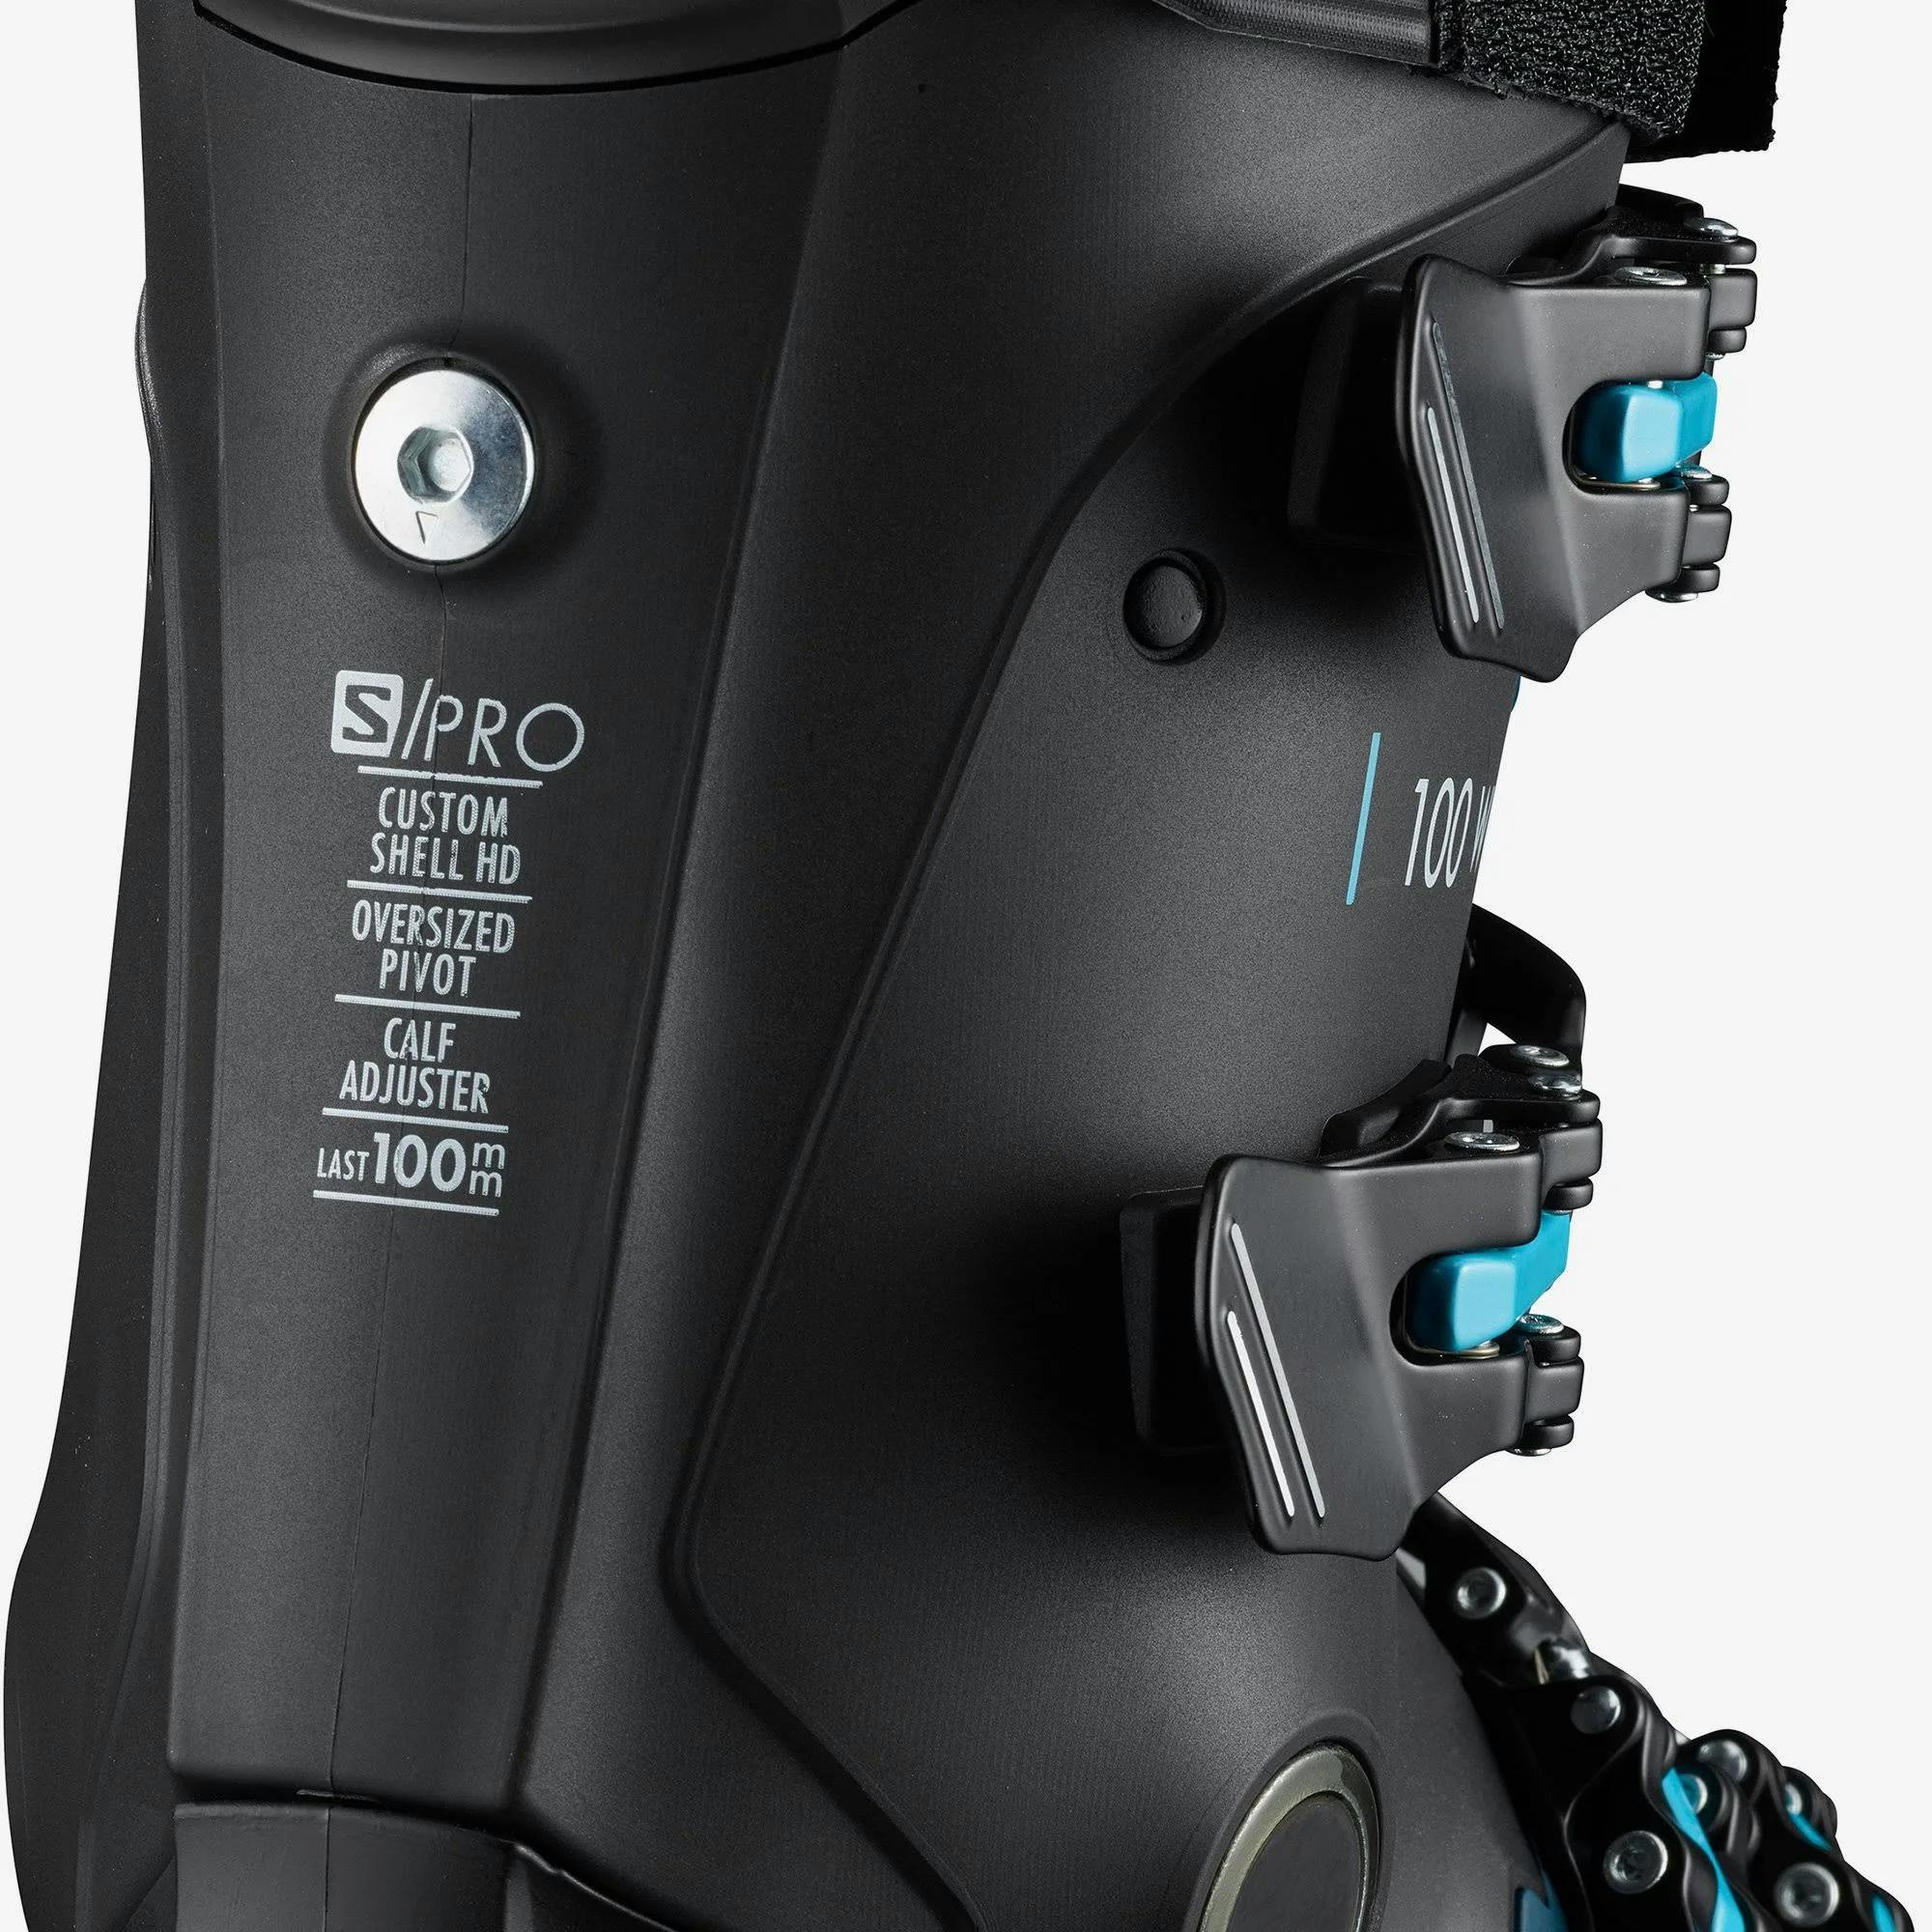 Salomon S Pro 100 Ski Boots · Women'smen's· 2021